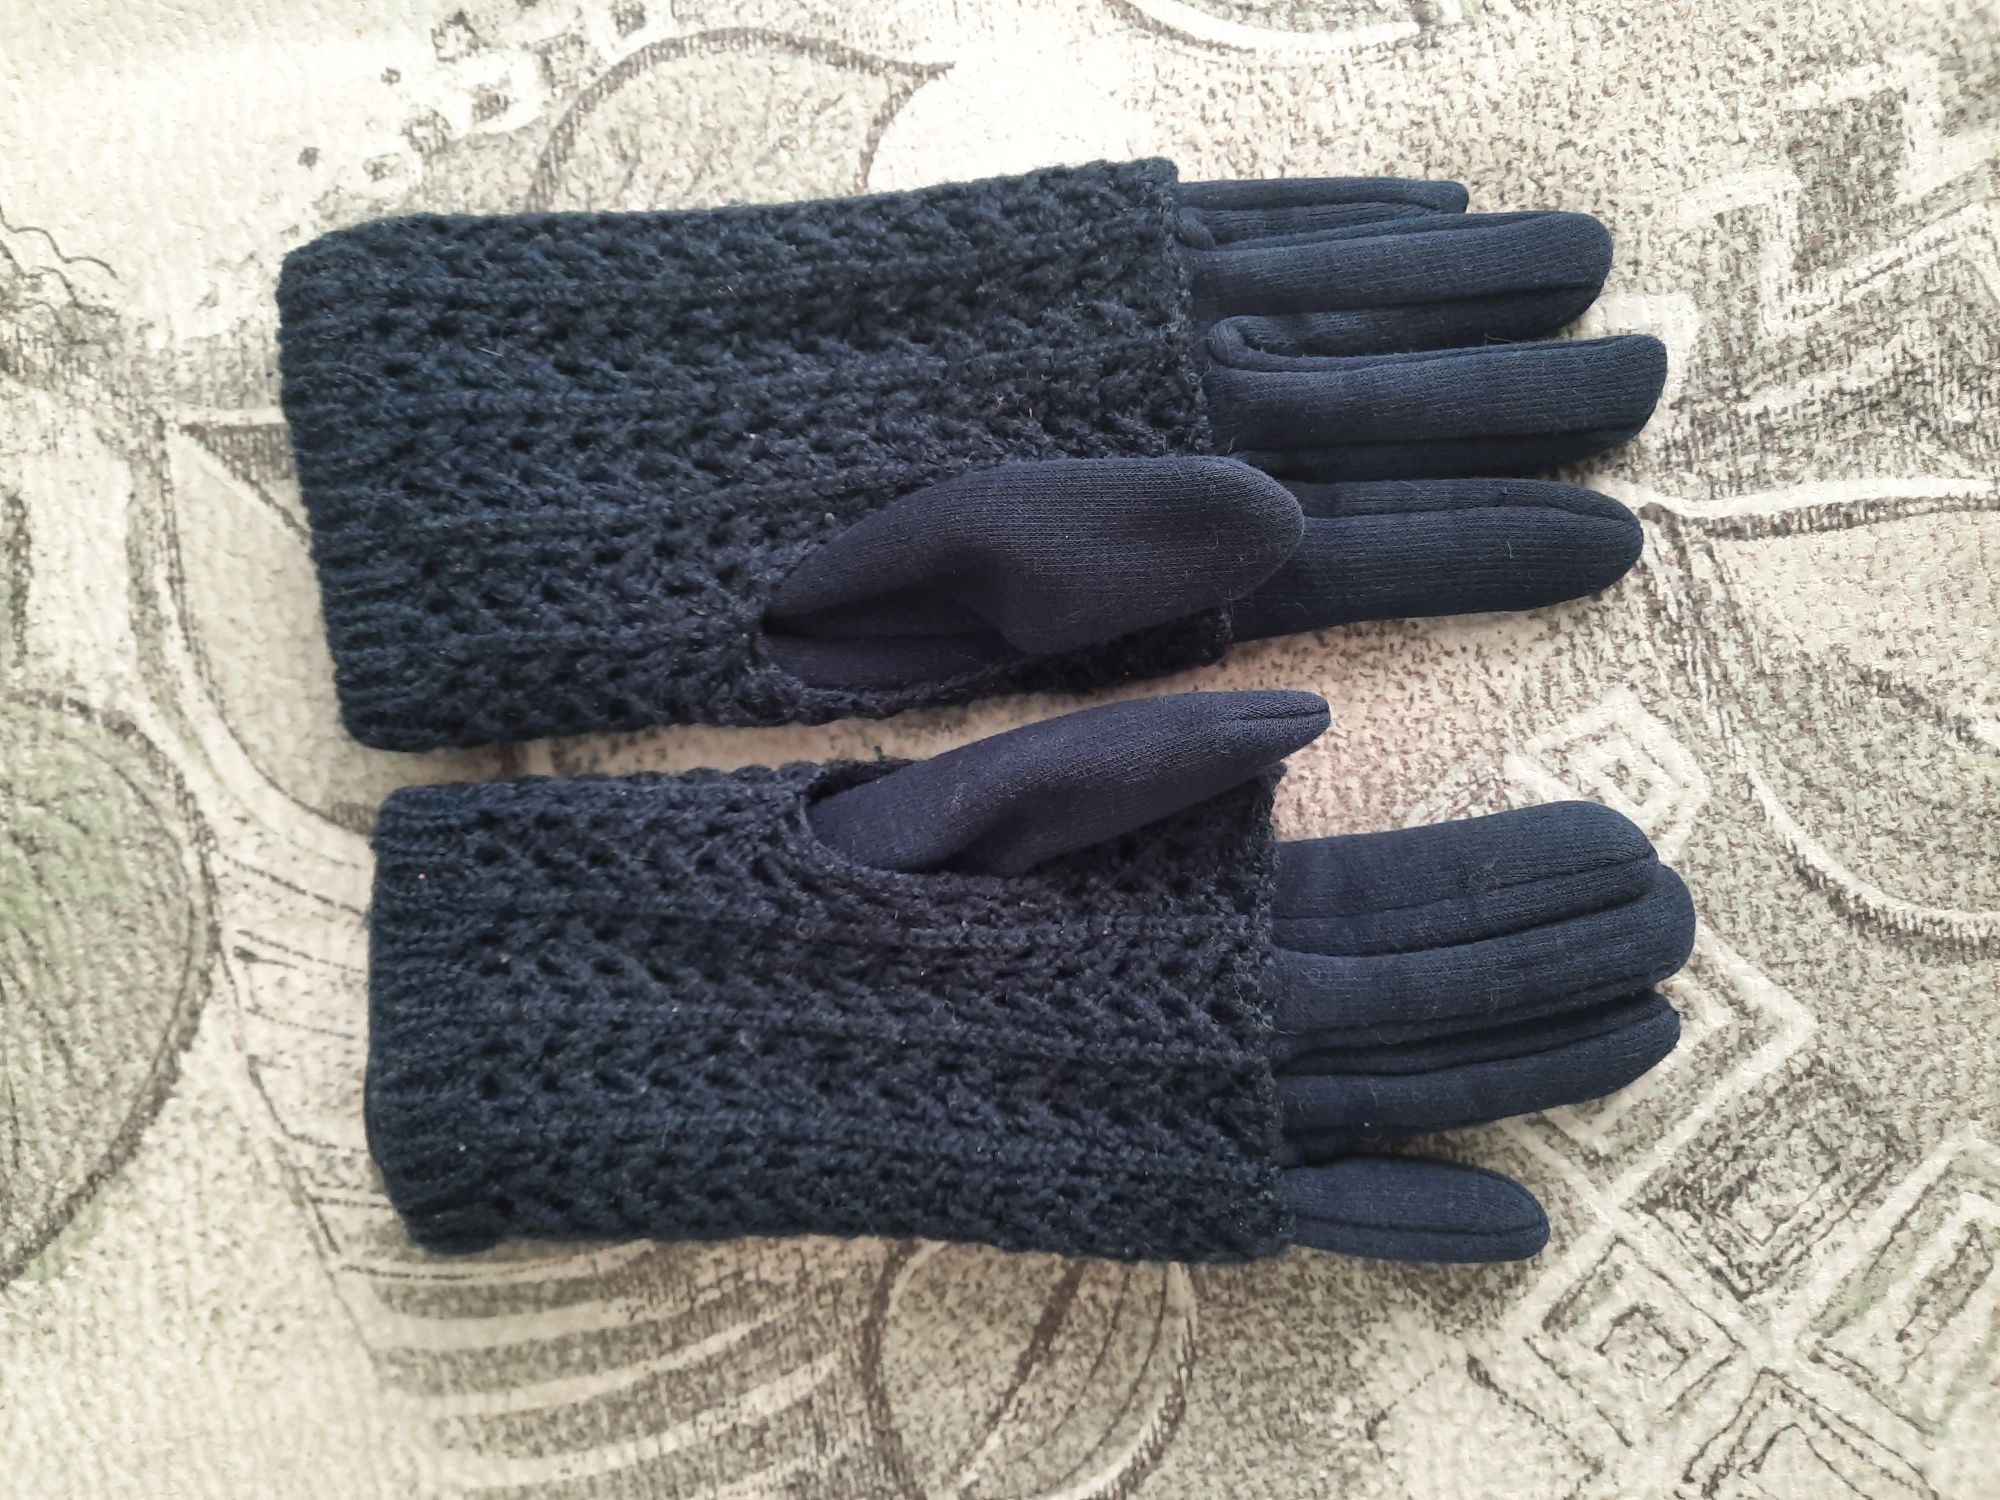 Жіночі рукавиці в хорошому стані.
Двойні ,зверху плетене .
Можна носит